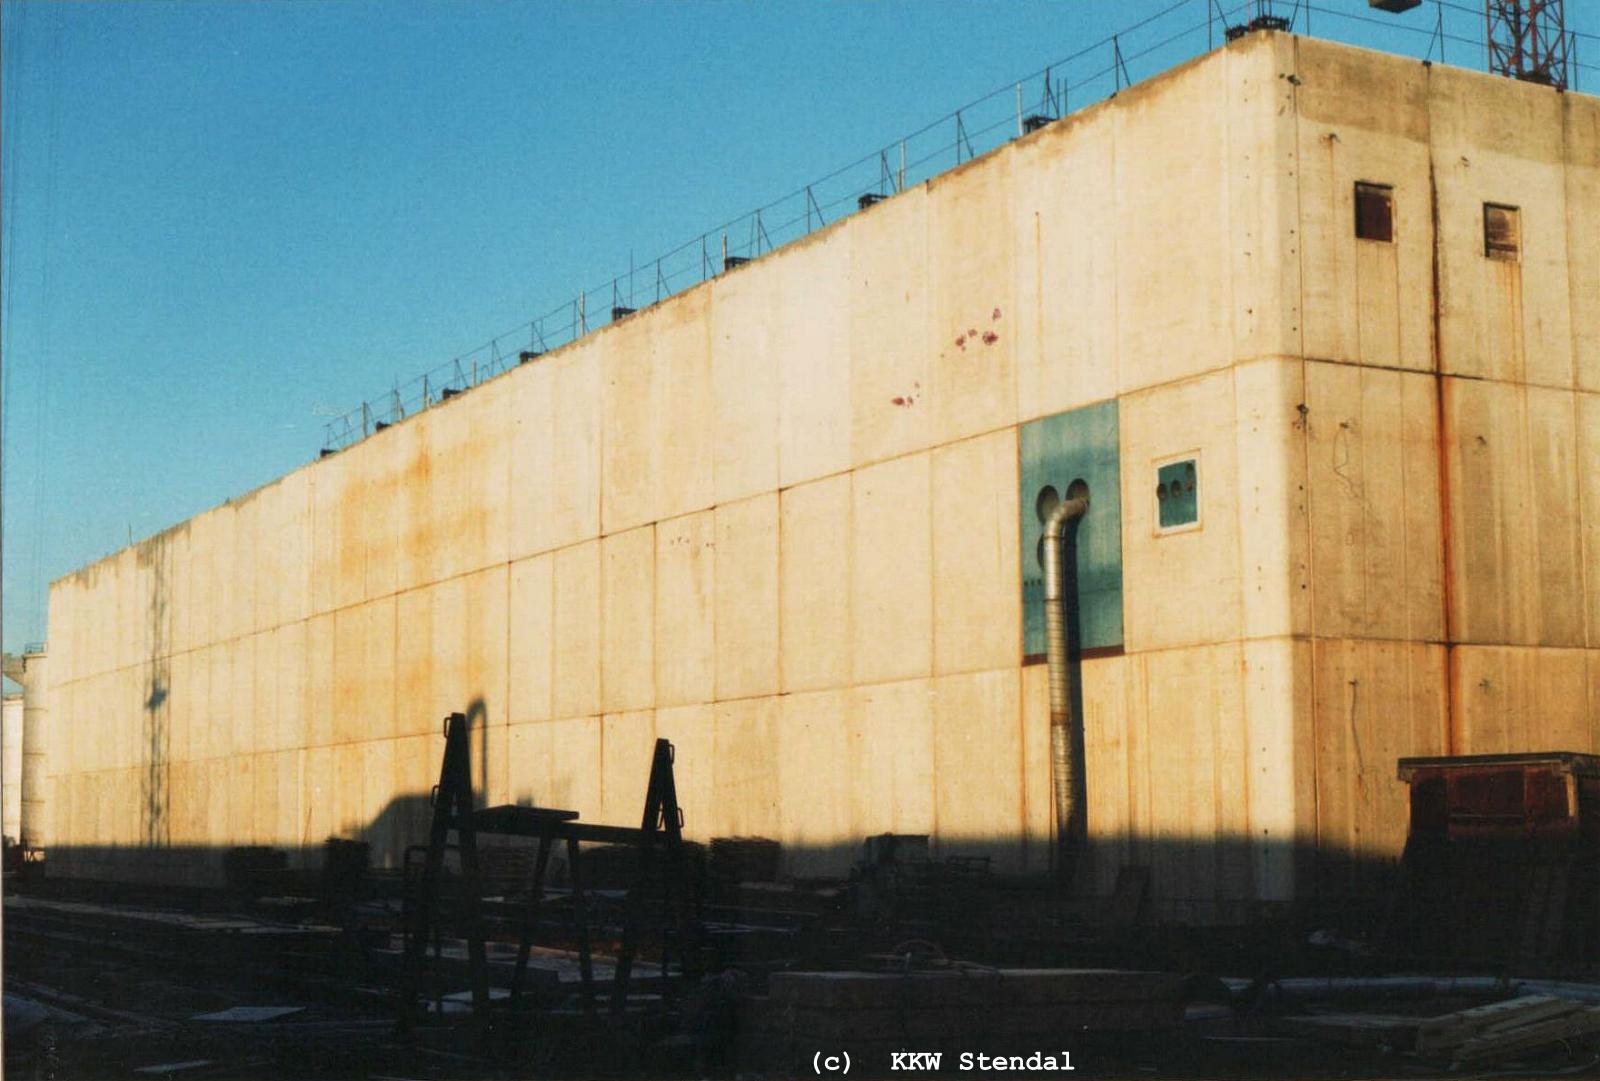  KKW Stendal, Baustelle 1990, SWA Spezielle Wasseraufbereitung, Südostbereich 